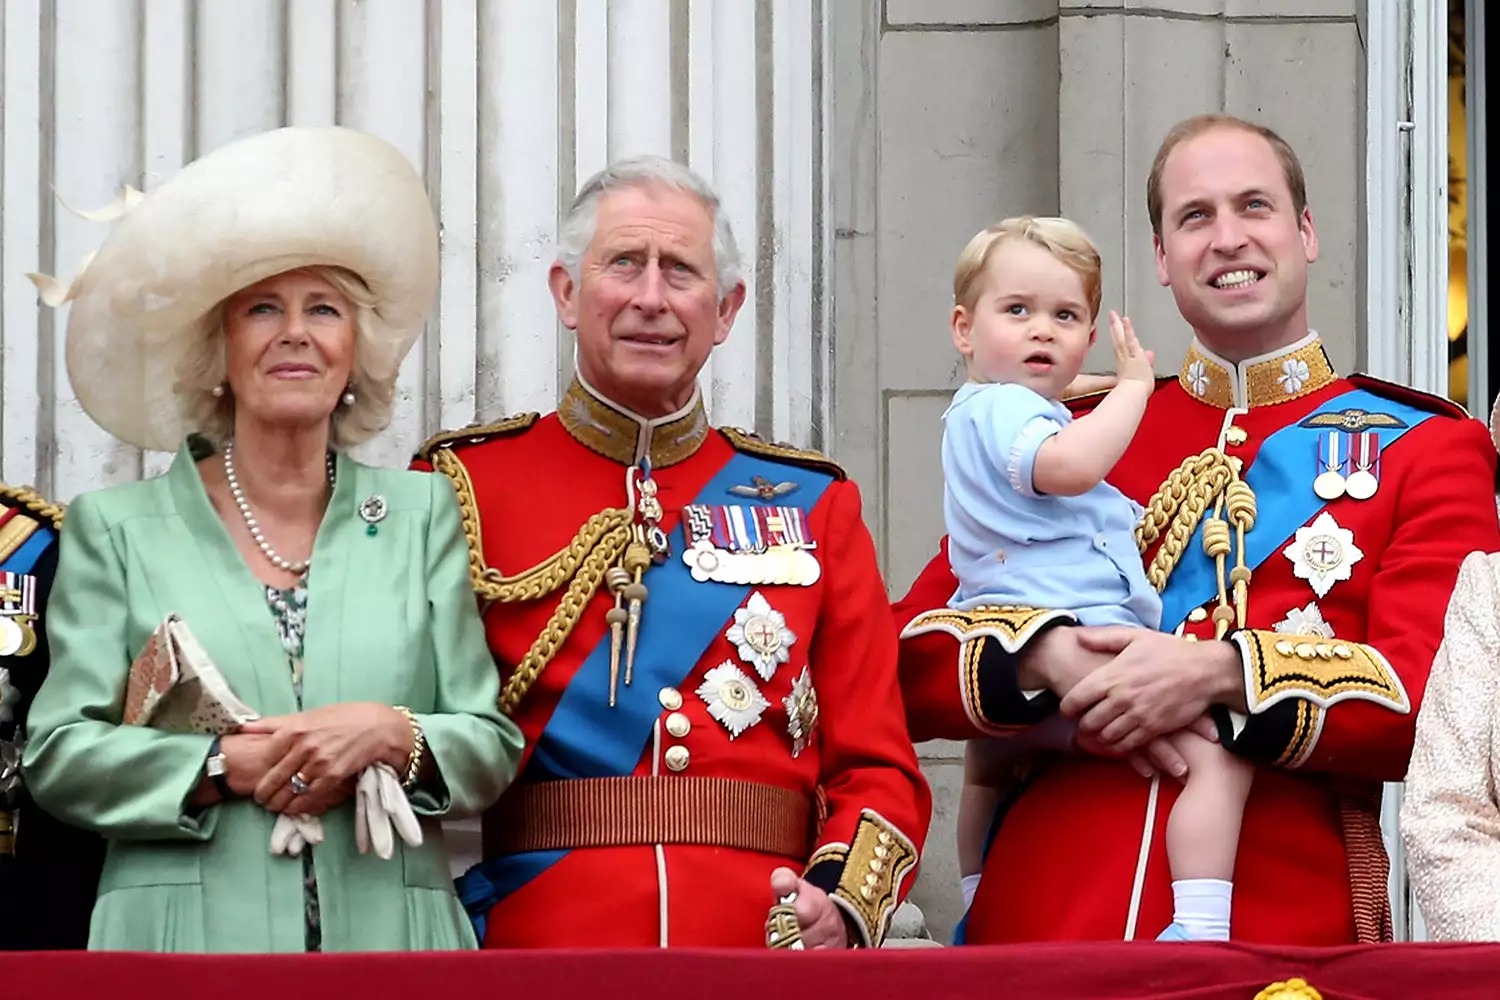 Thân vương William sẽ là người thực hiện hành động quan trọng và ý nghĩa này trong lễ đăng quang của Vua Charles - Ảnh 3.